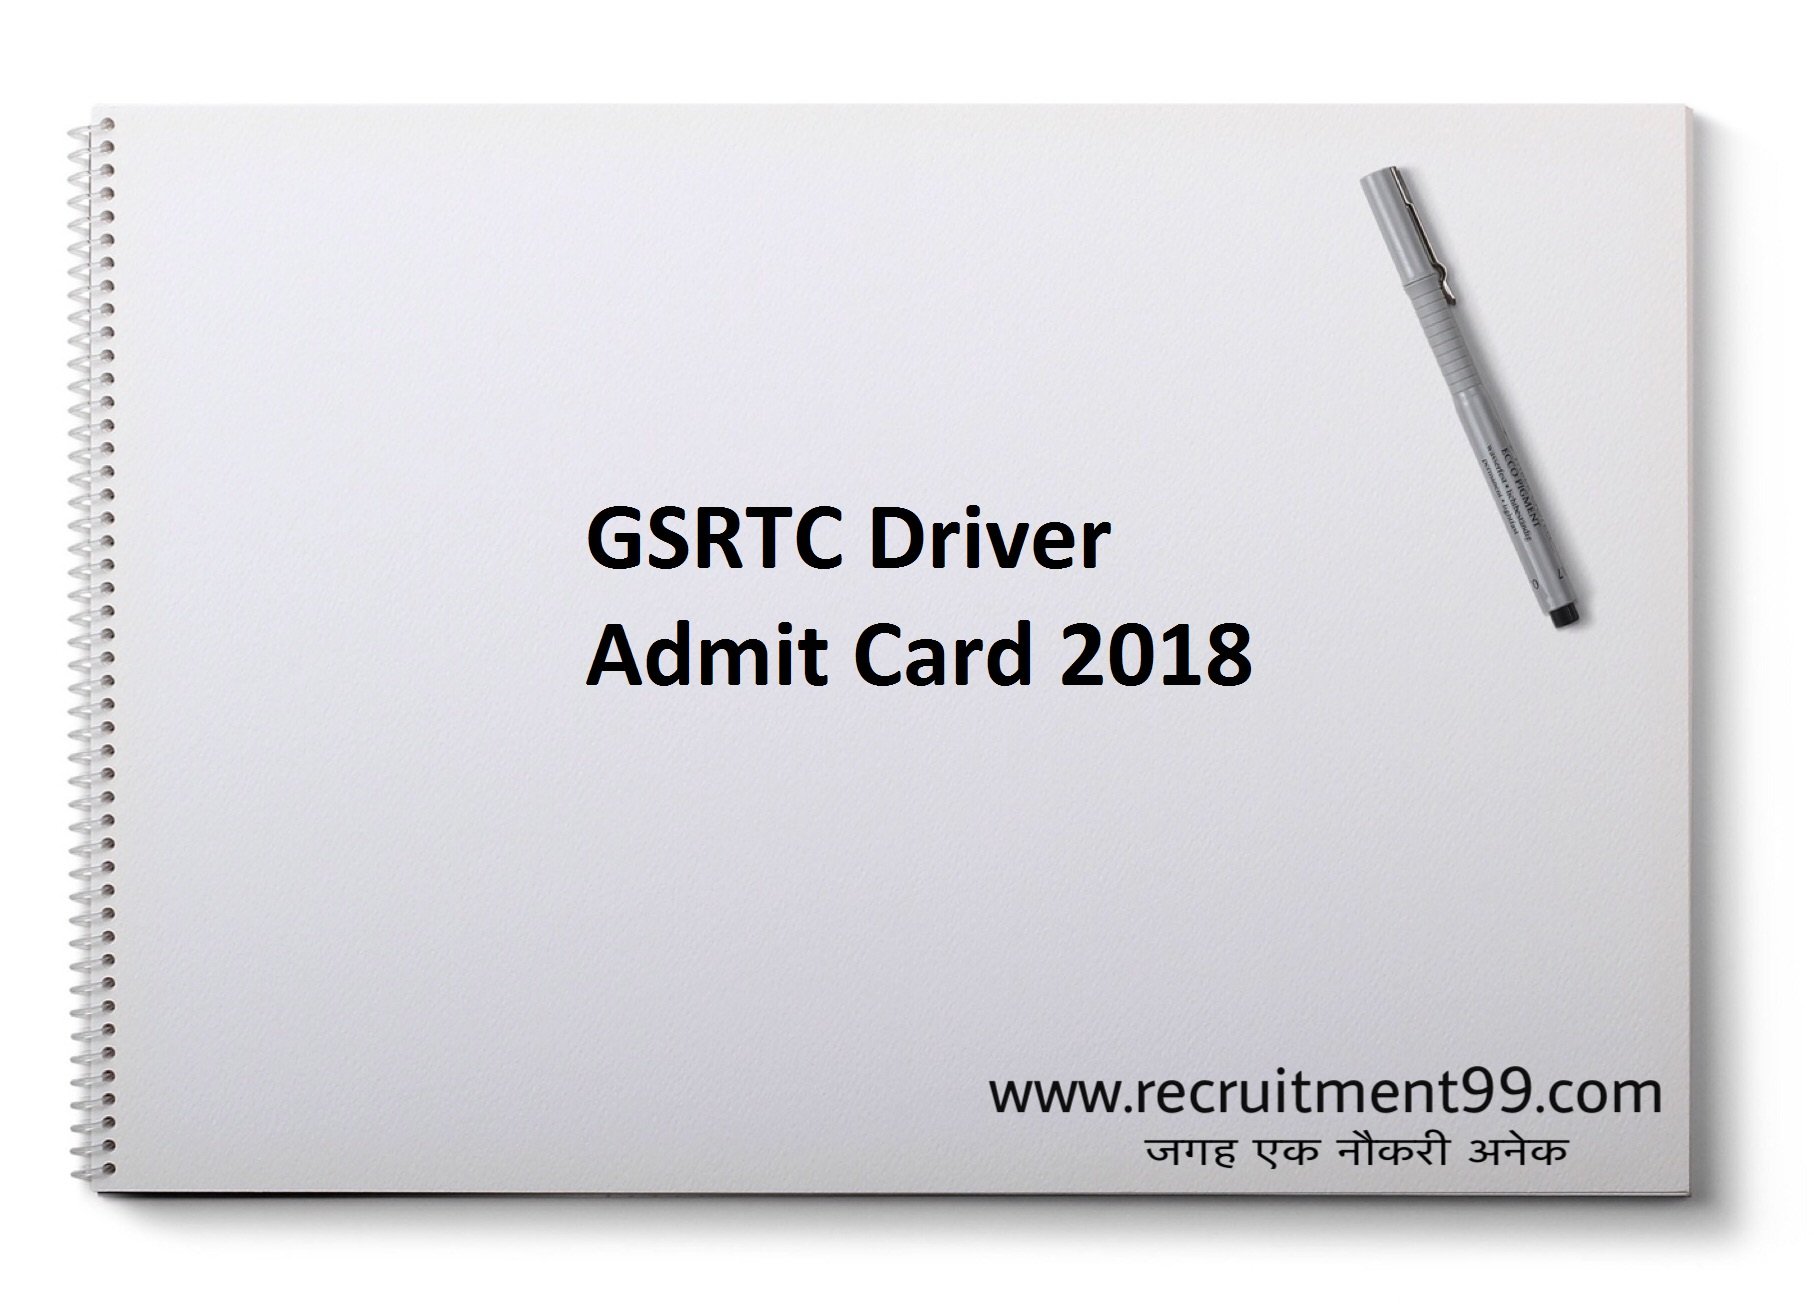 GSRTC Driver Recruitment Admit Card Result 2018